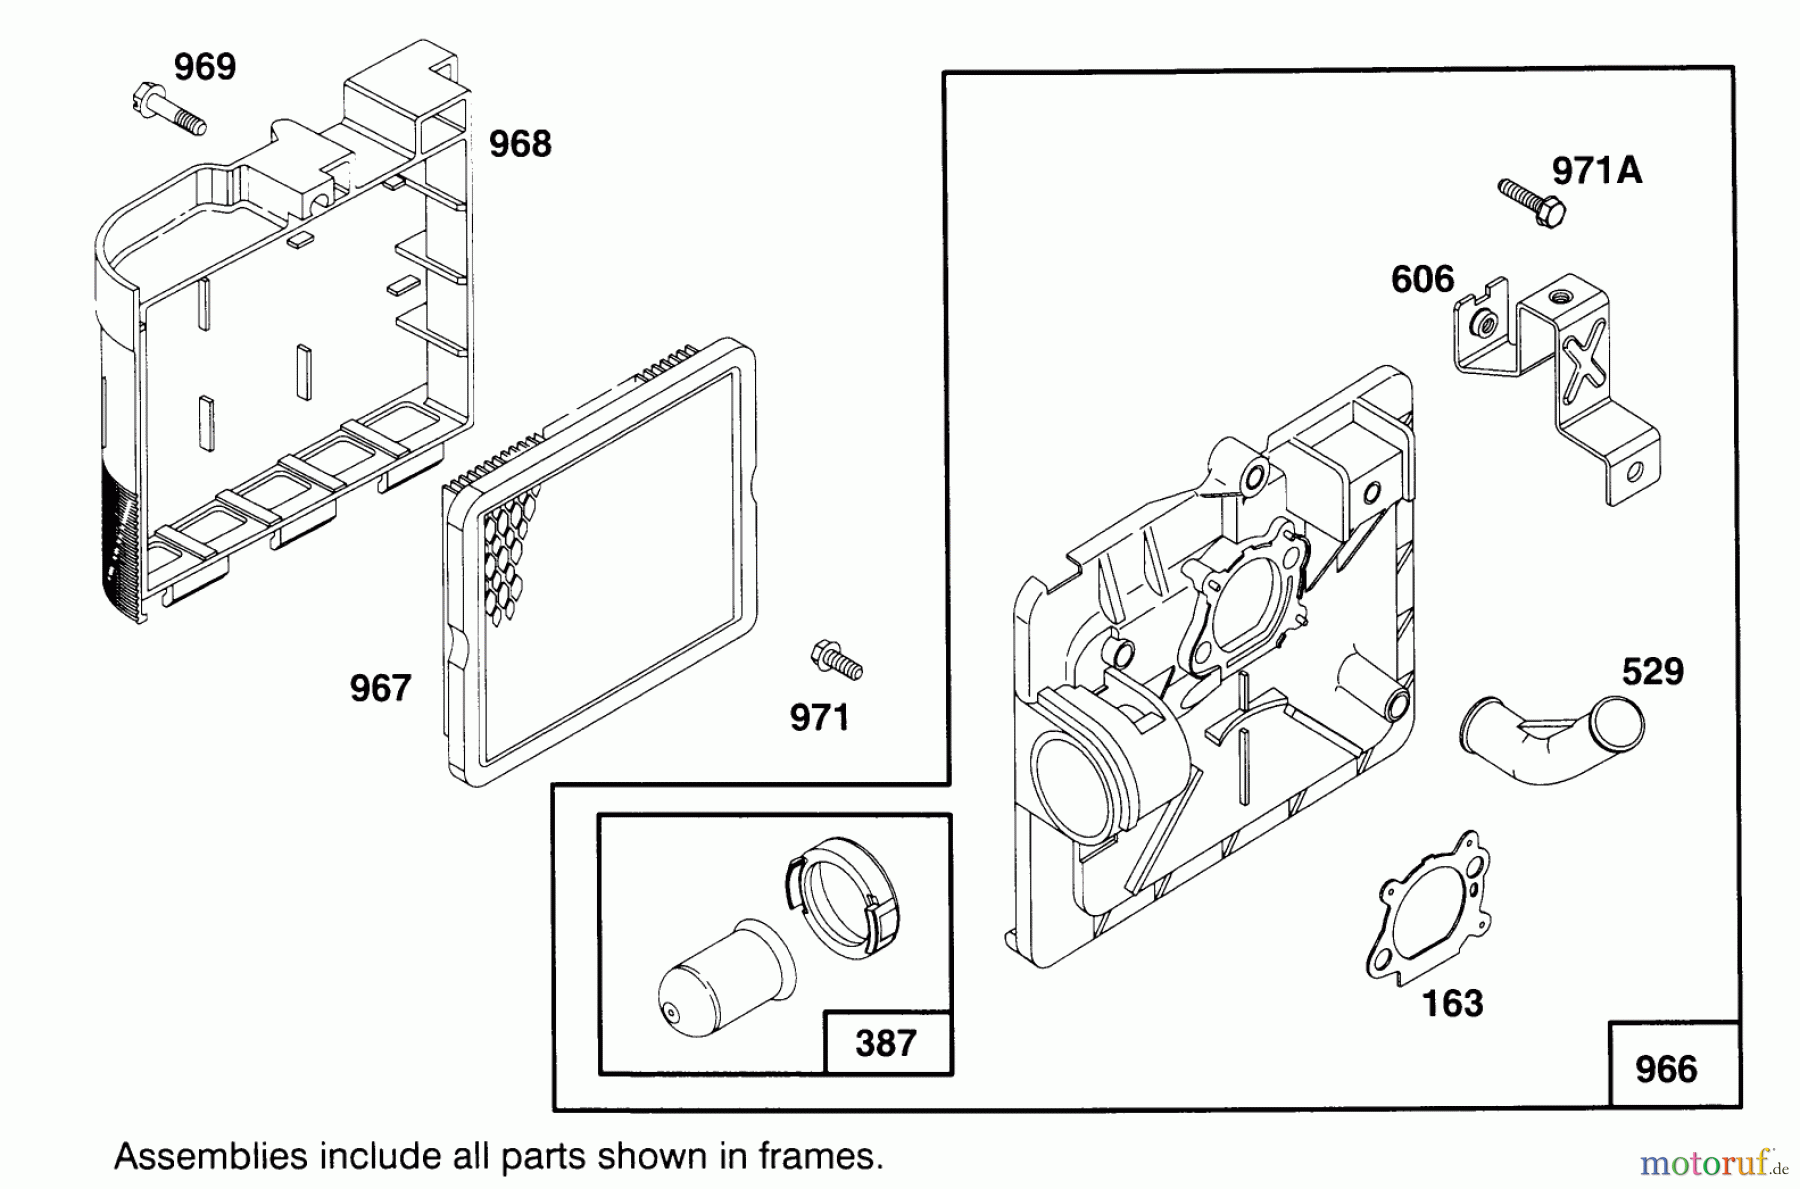  Toro Neu Mowers, Walk-Behind Seite 2 21011BC - Toro Lawnmower, 1995 (5900001-5999999) ENGINE MODEL 12E802-0620-01 #5